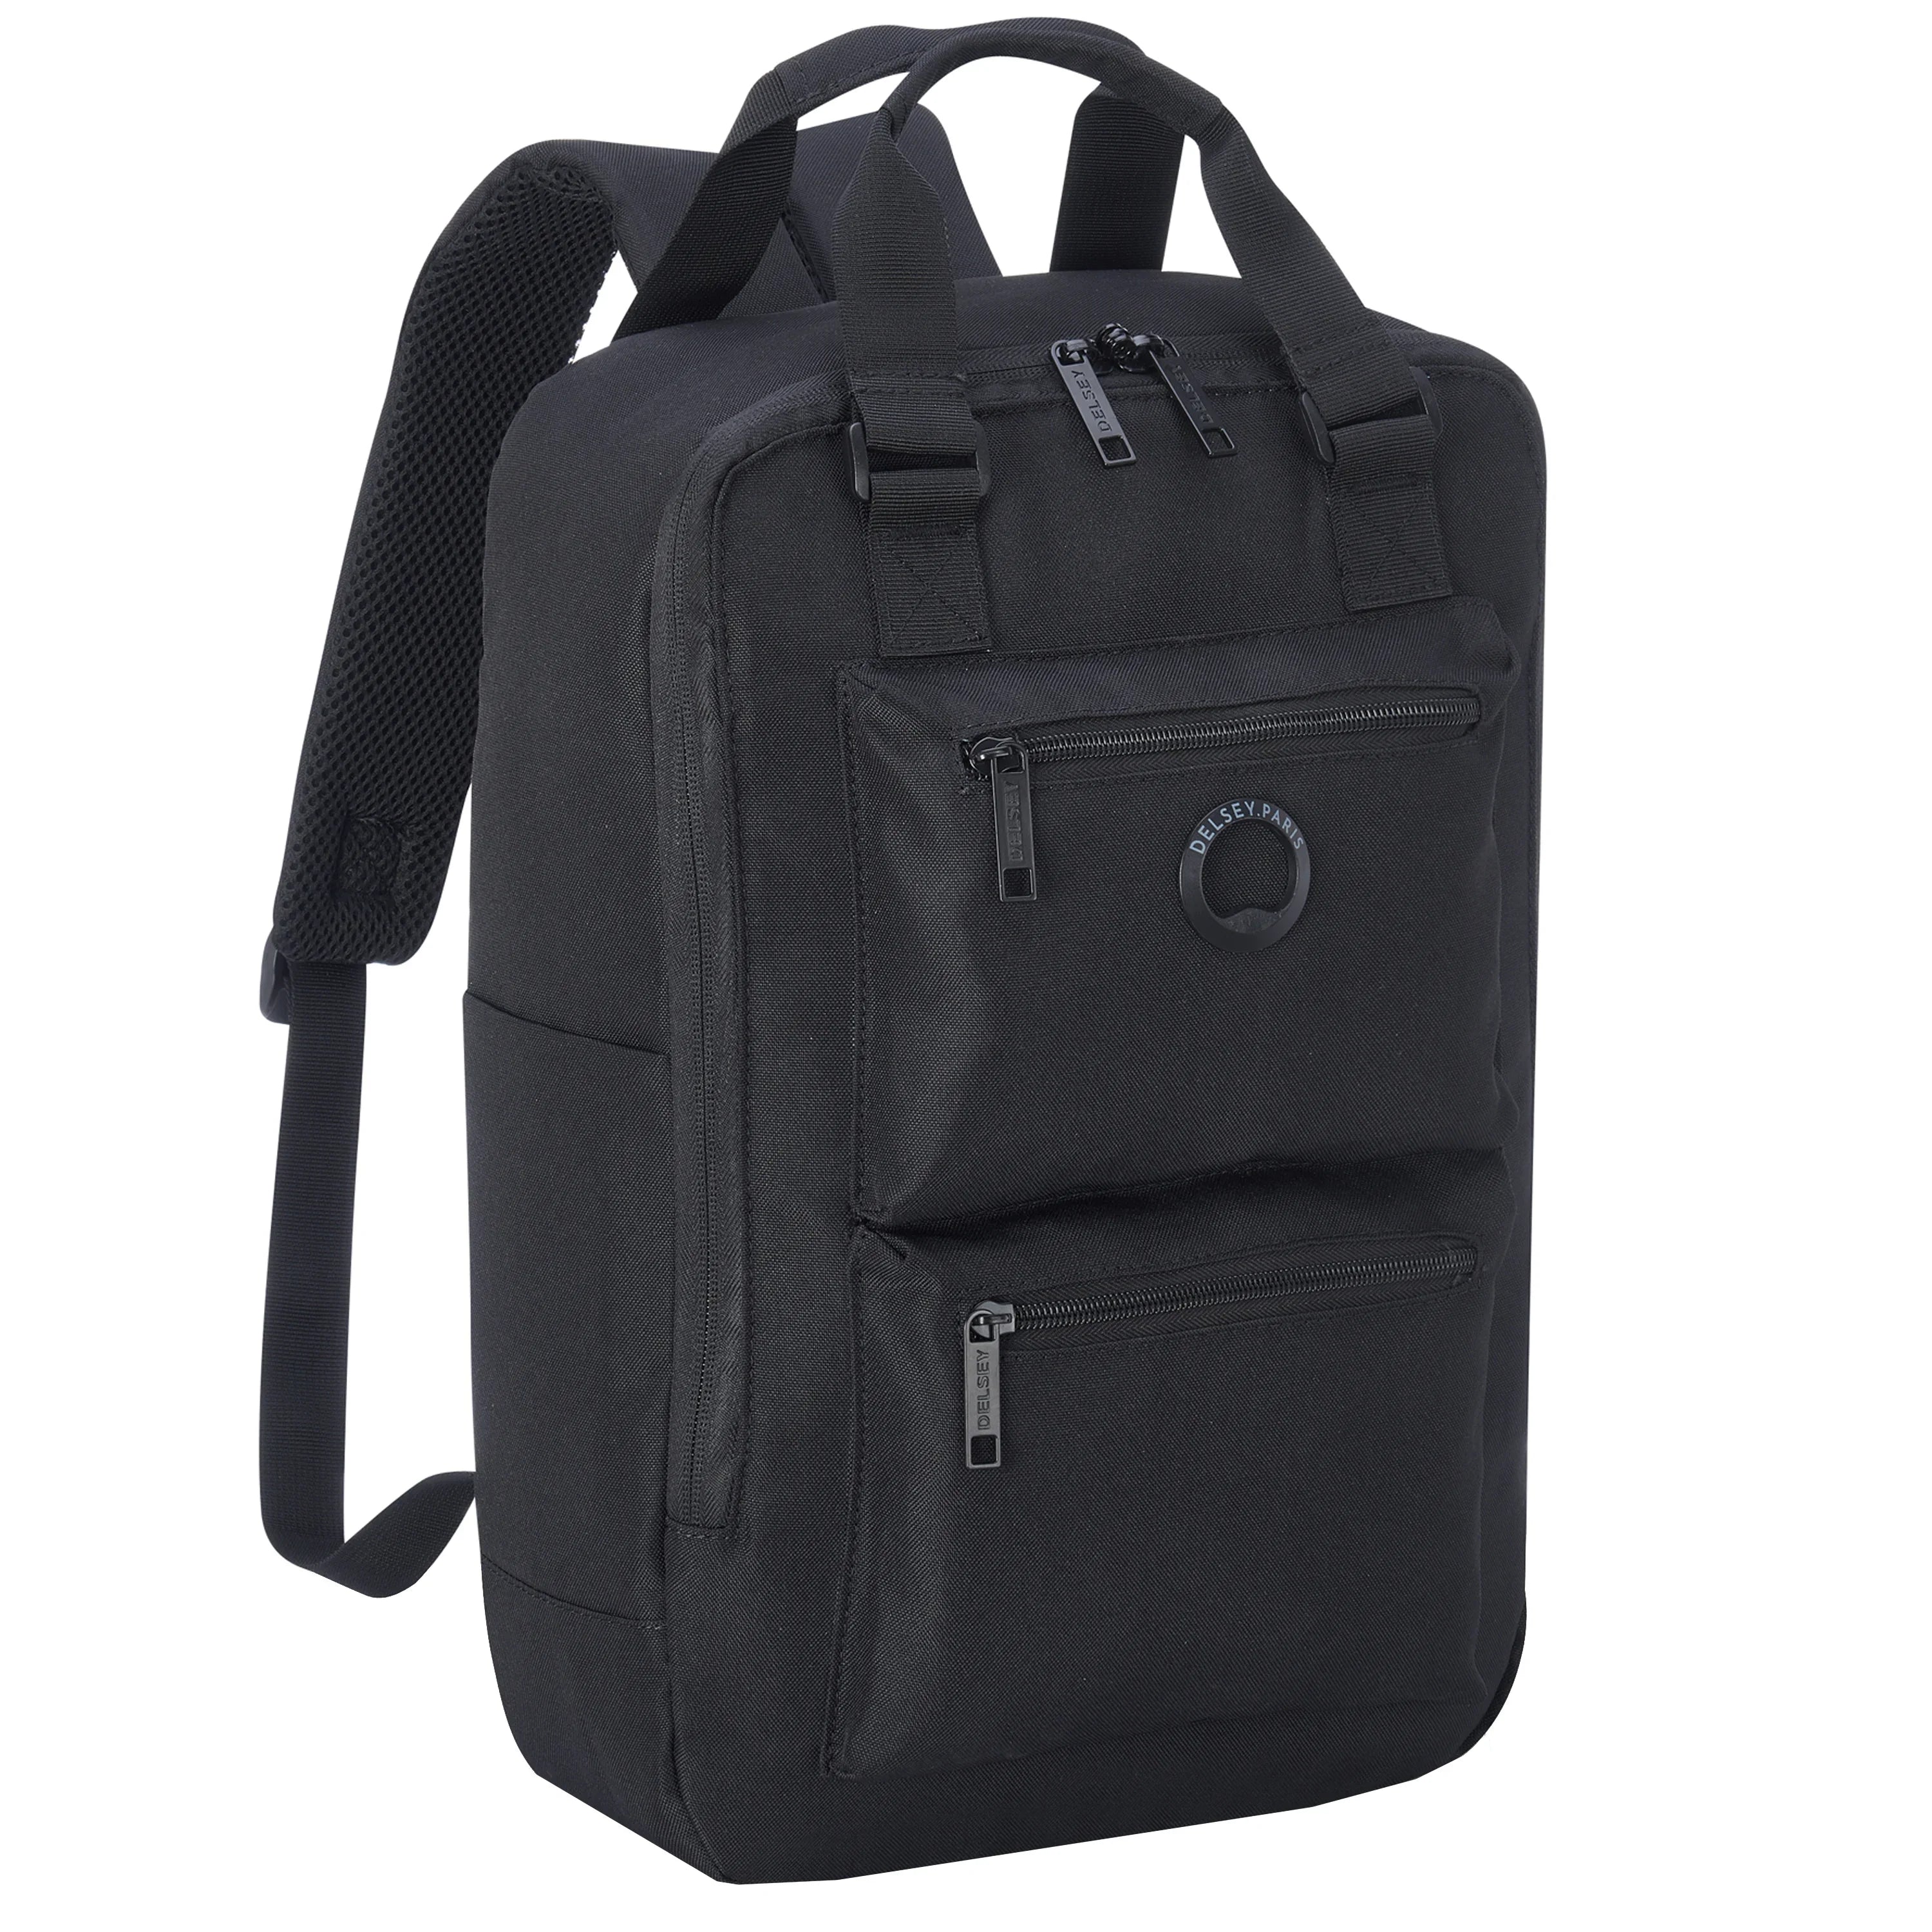 Delsey Citypak backpack 41 cm - Black